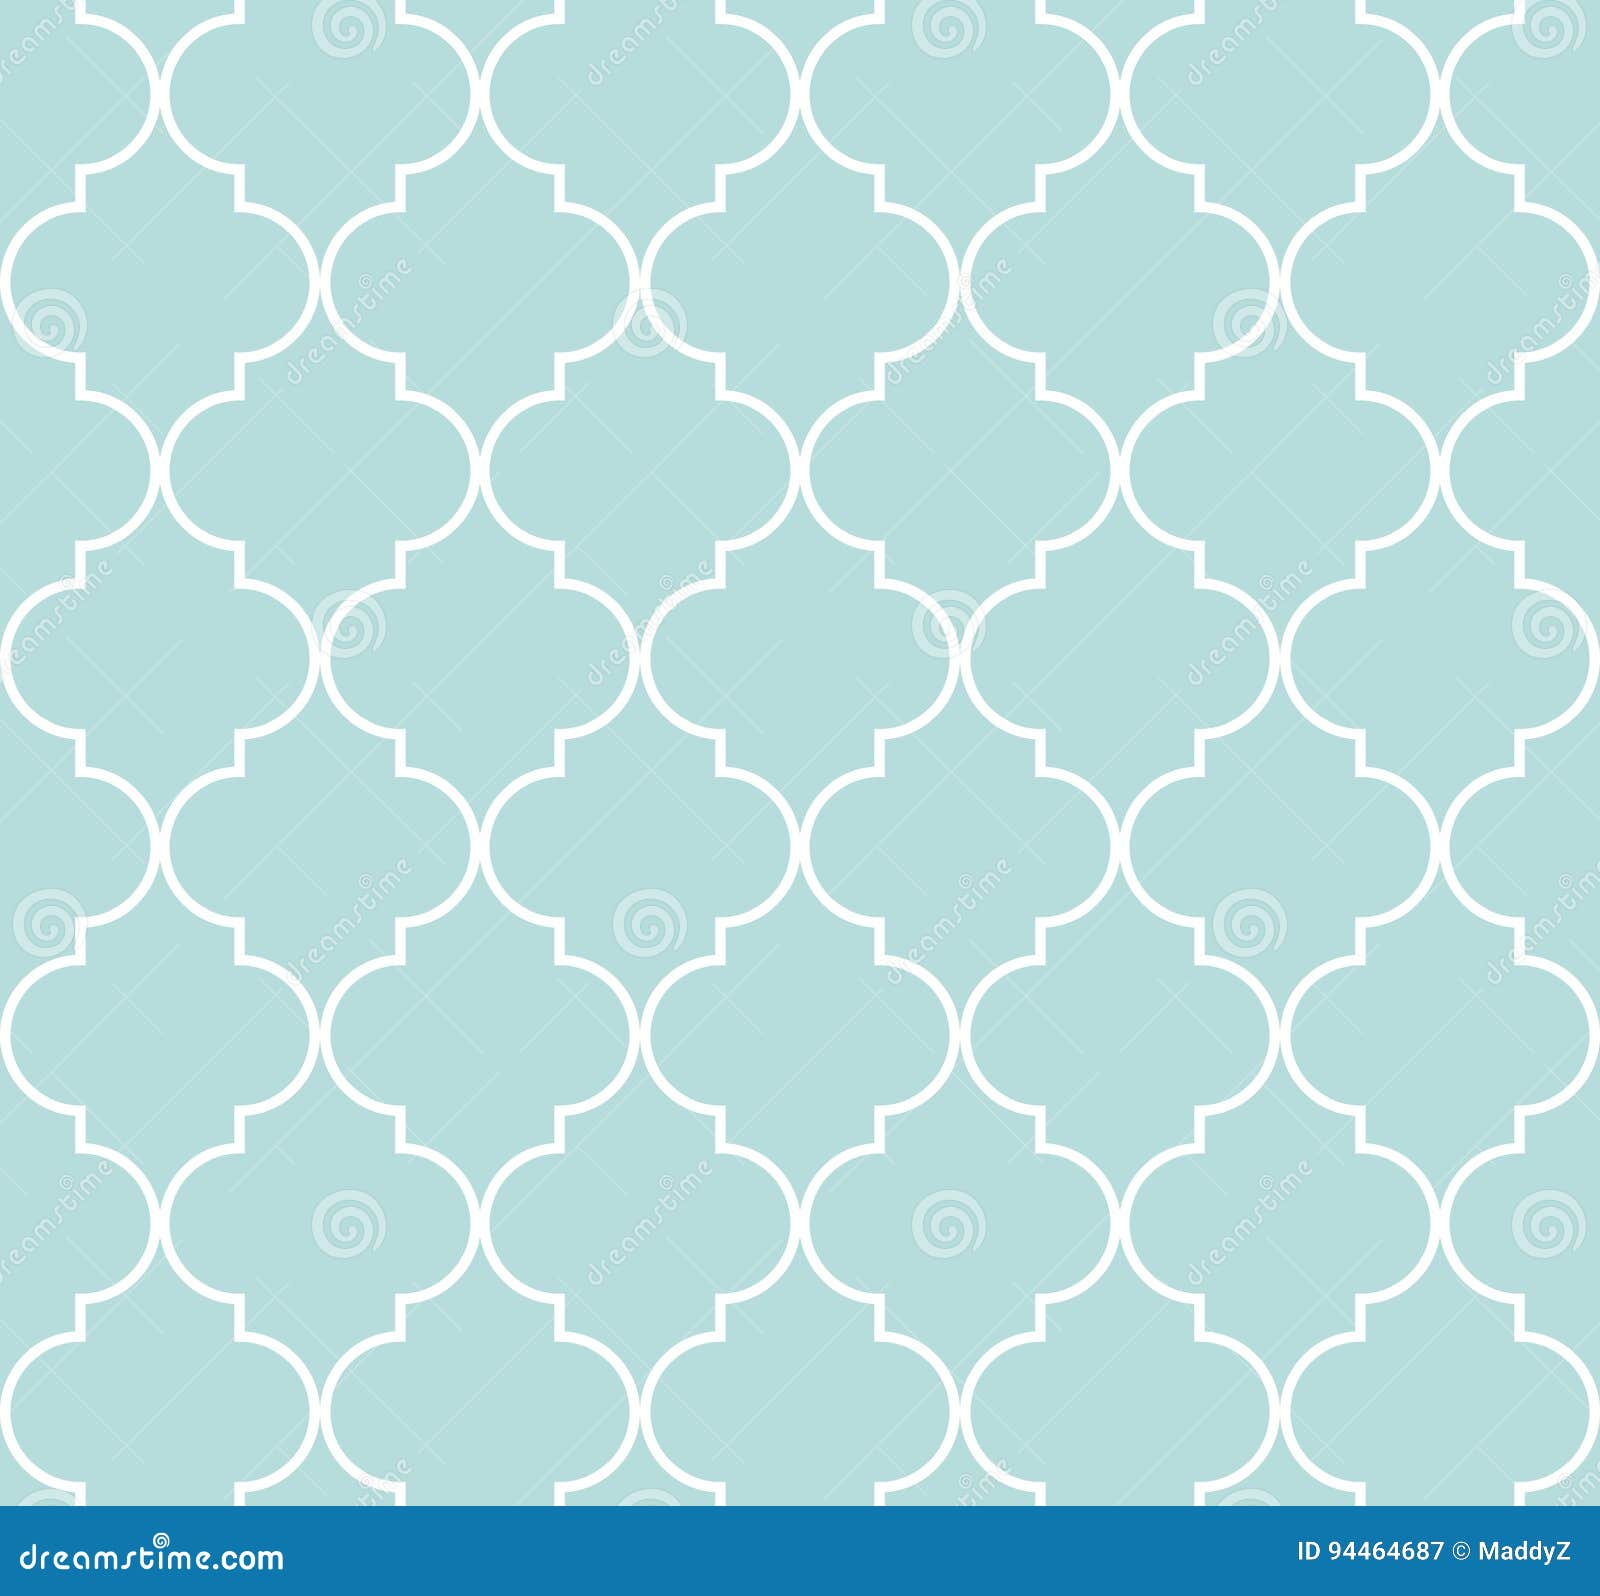 quatrefoil geometric seamless pattern